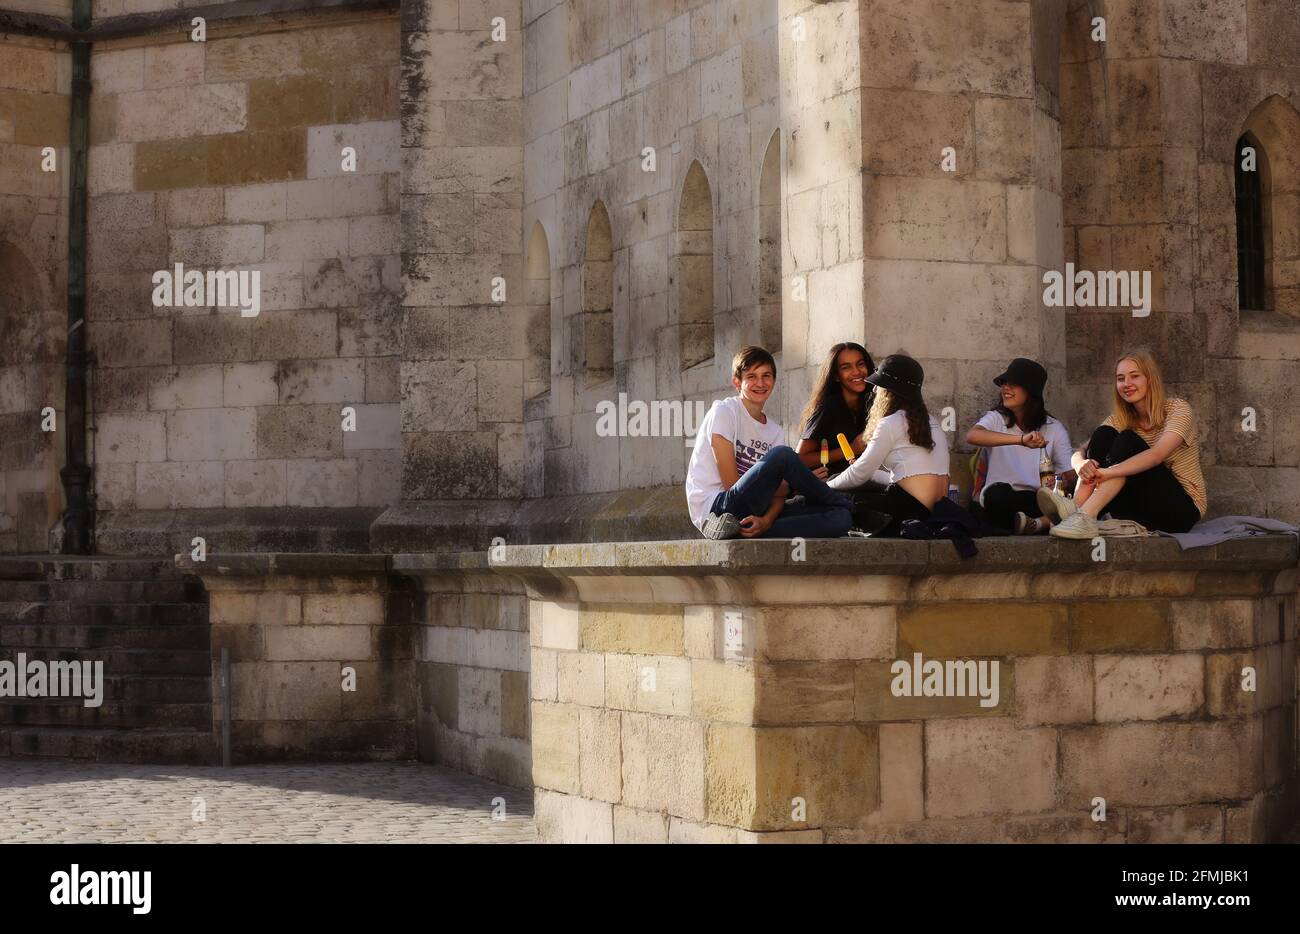 Regensburg Innenstadt oder City mit jungen Menschen die vor dem Dom sitzen Foto Stock